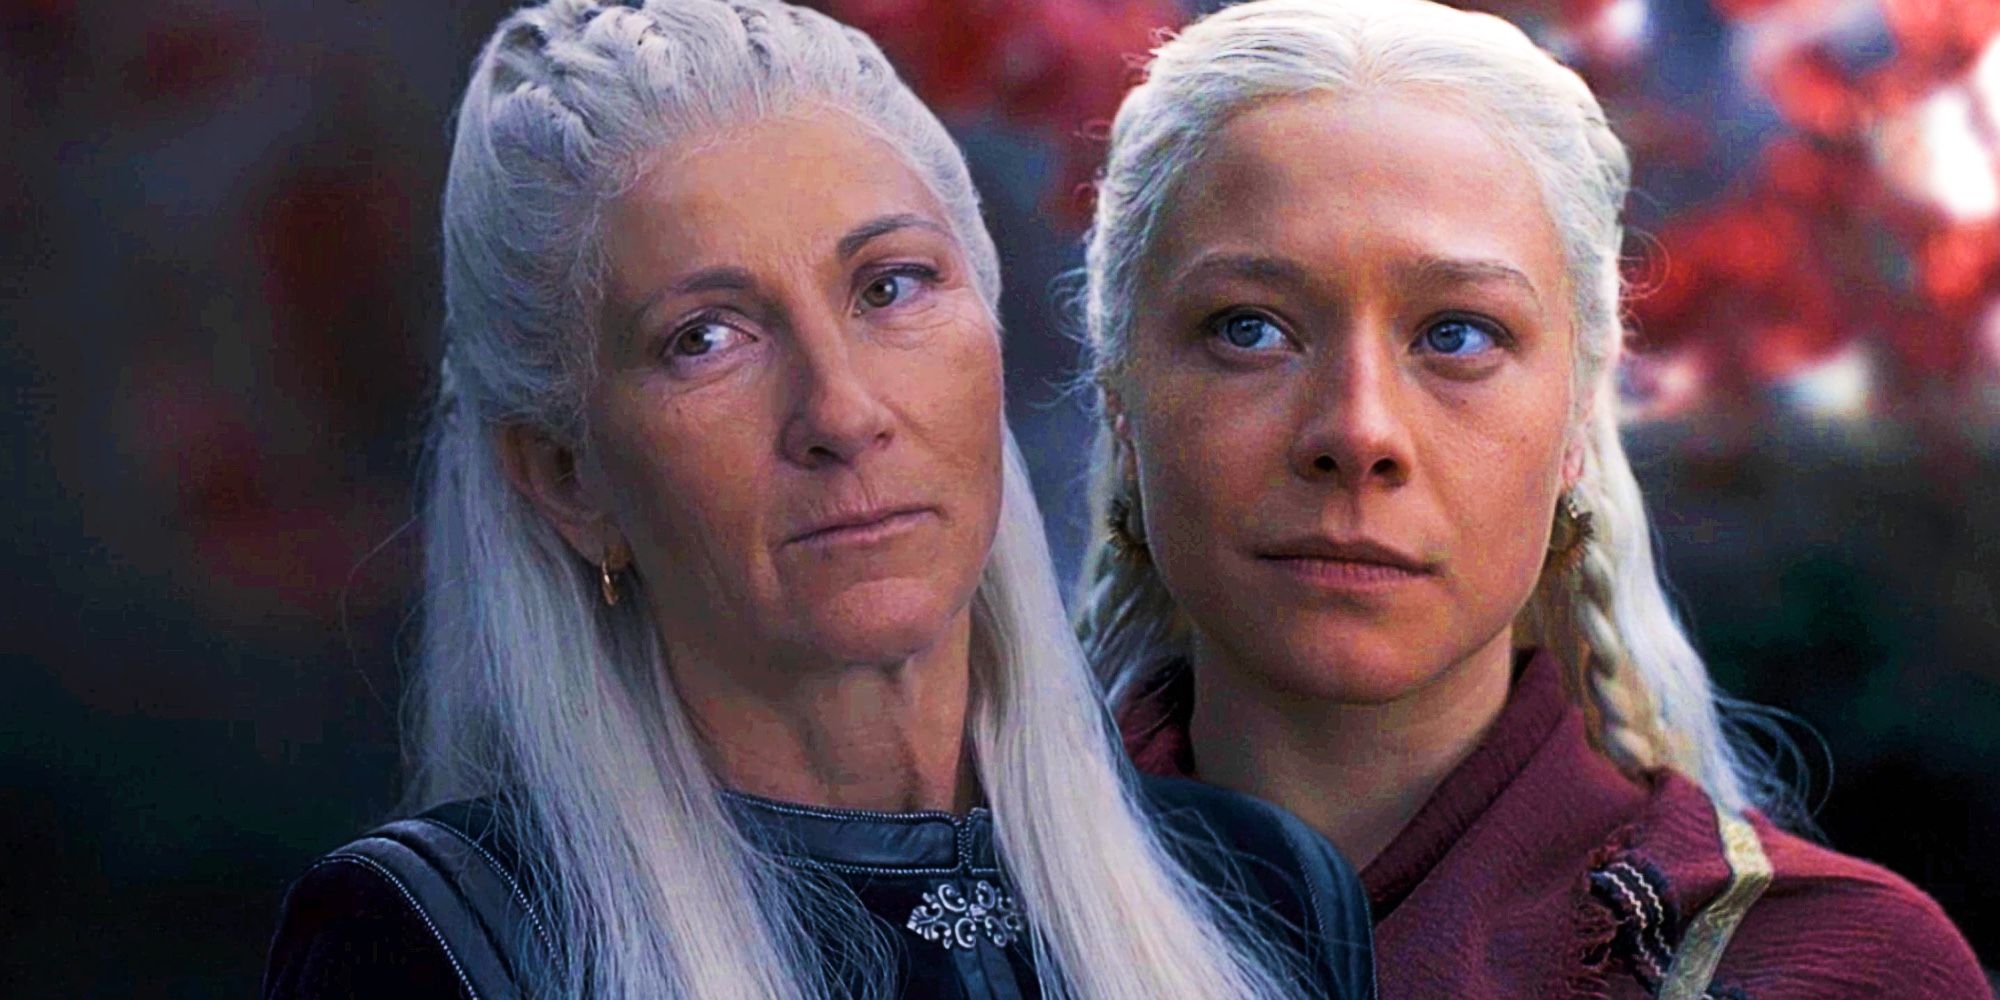 House Of The Dragon Eve Melhor como Rhaenys e Emma D'Arcy como Rhaenyra Targaryen